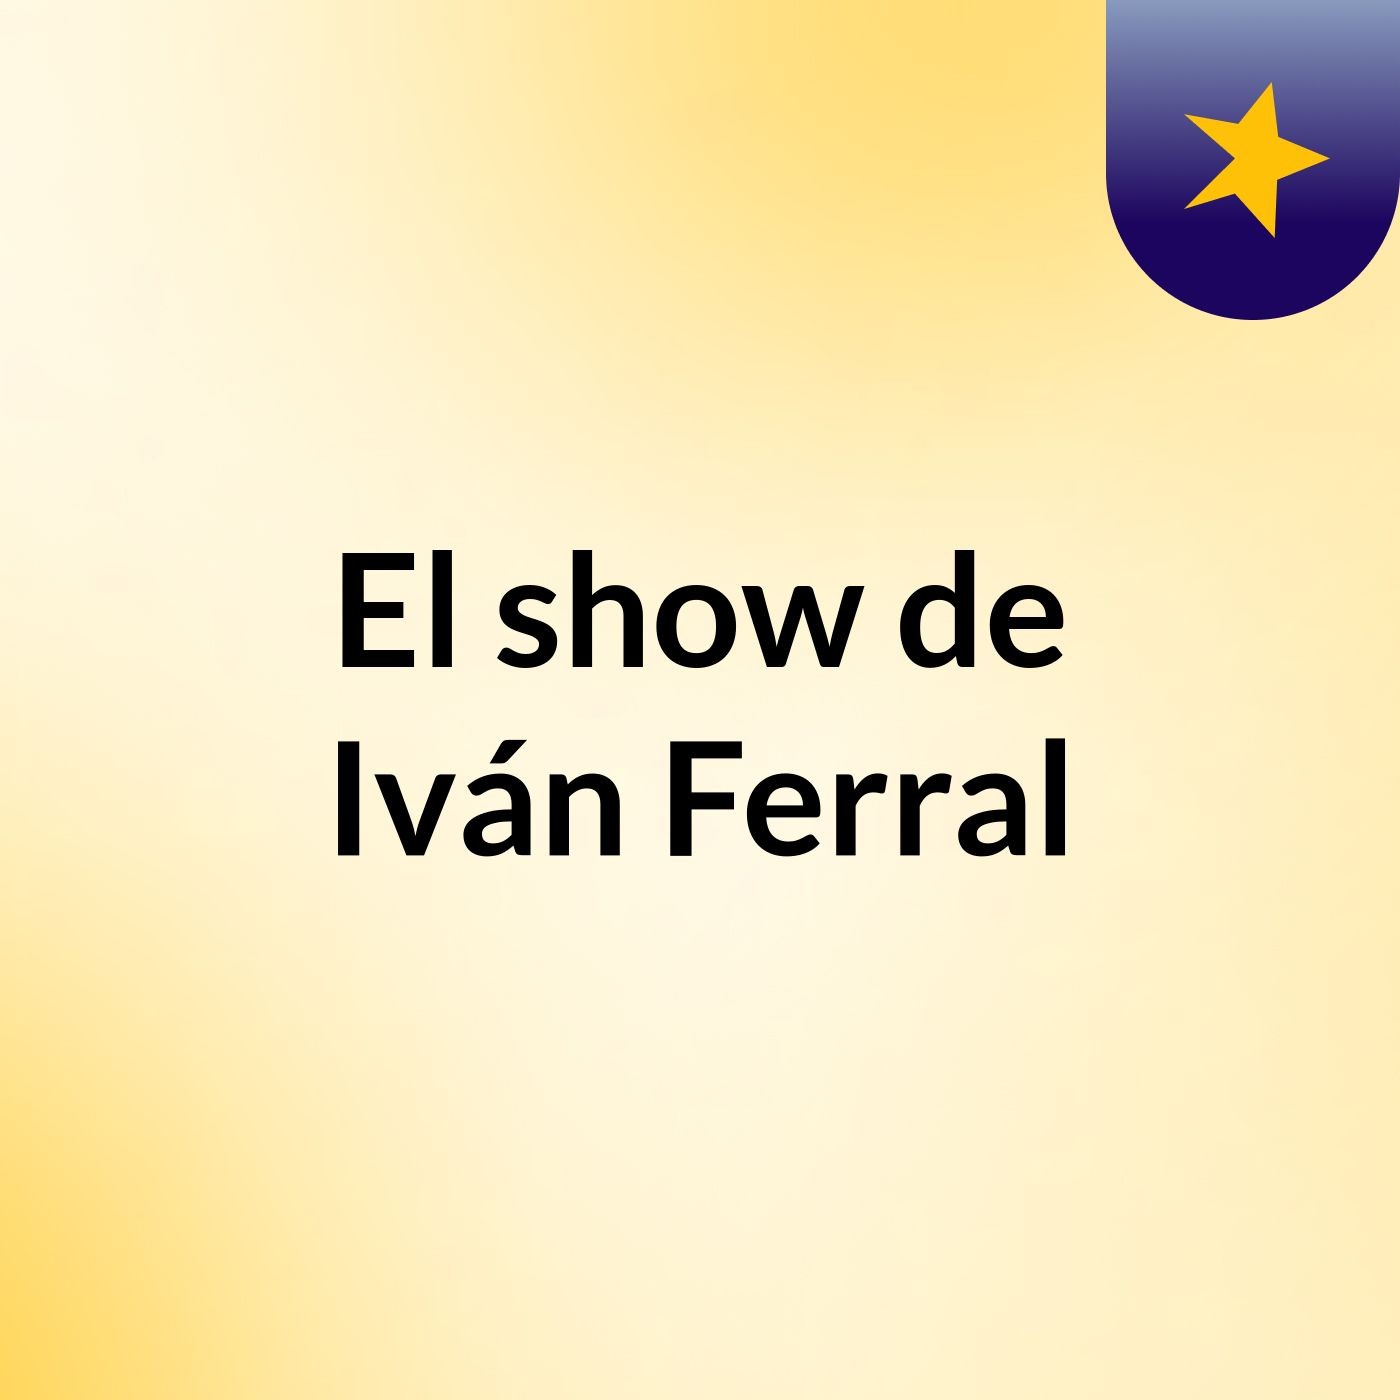 El show de Iván Ferral